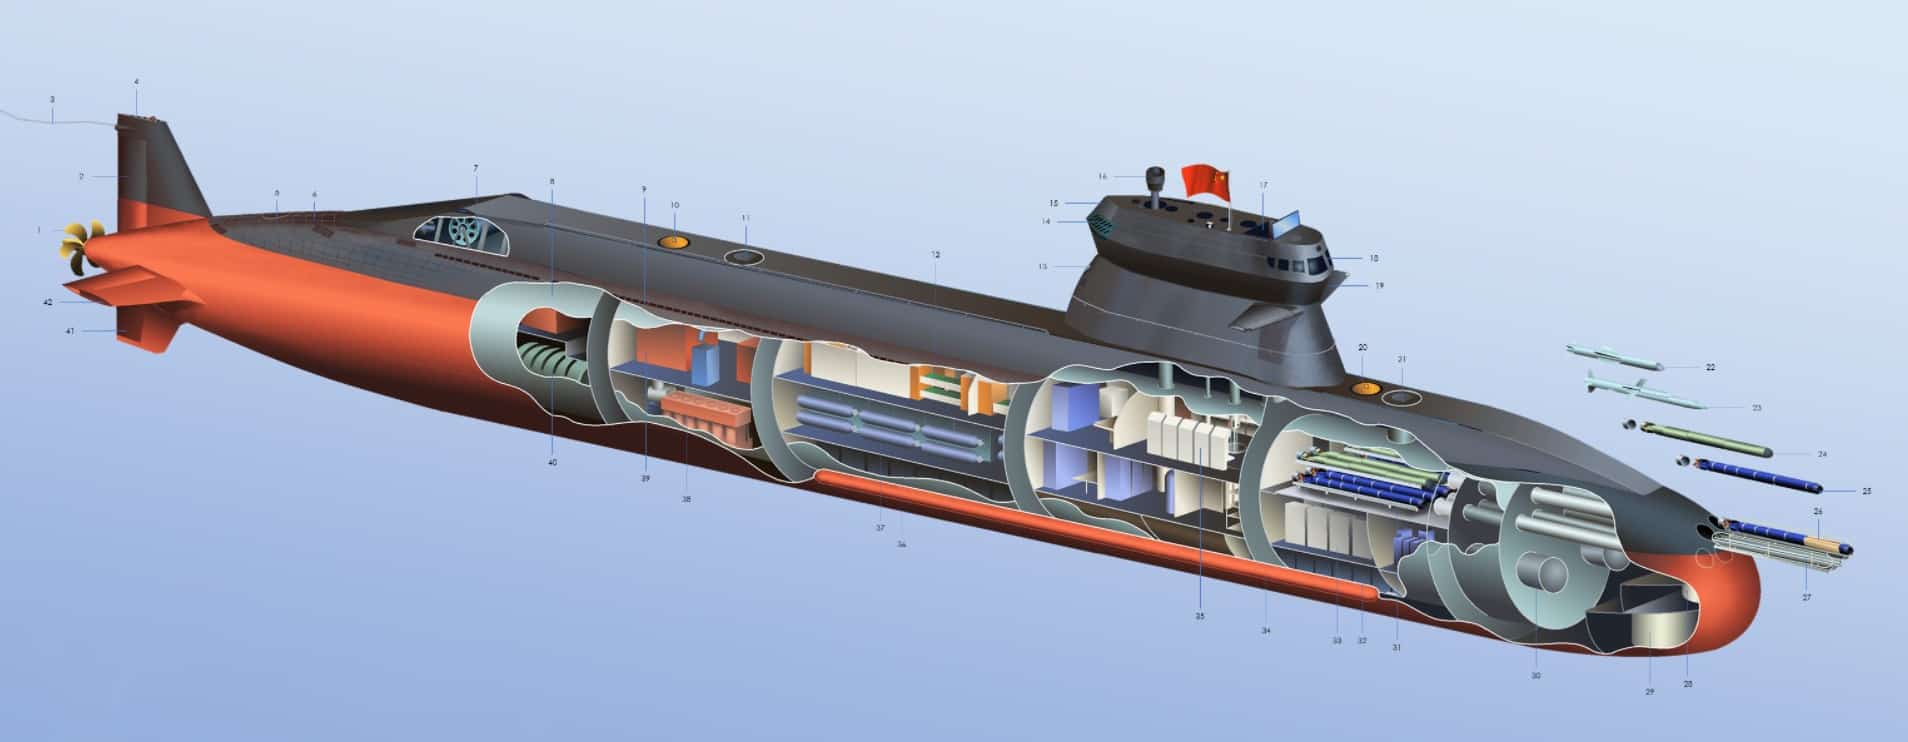 Одна з модифікацій китайського підводного човна Type-039